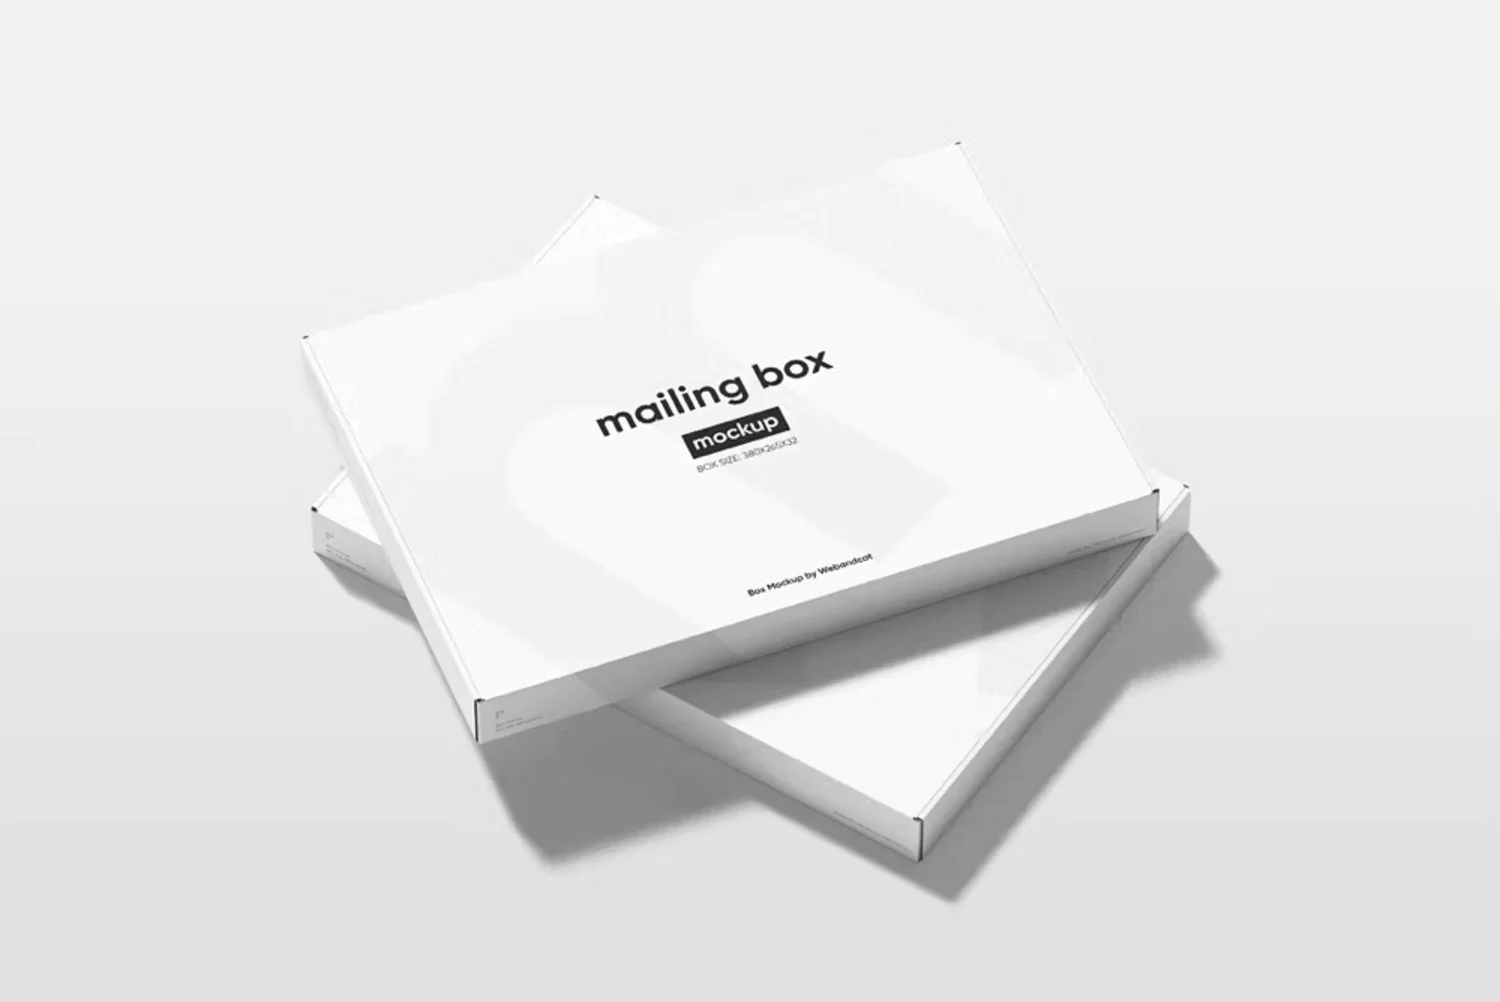 5018 长方形扁平飞机盒礼盒模型盒面设计贴图ps包装样机素材模板 4psd Slim Mailing Box Mockup@GOOODME.COM